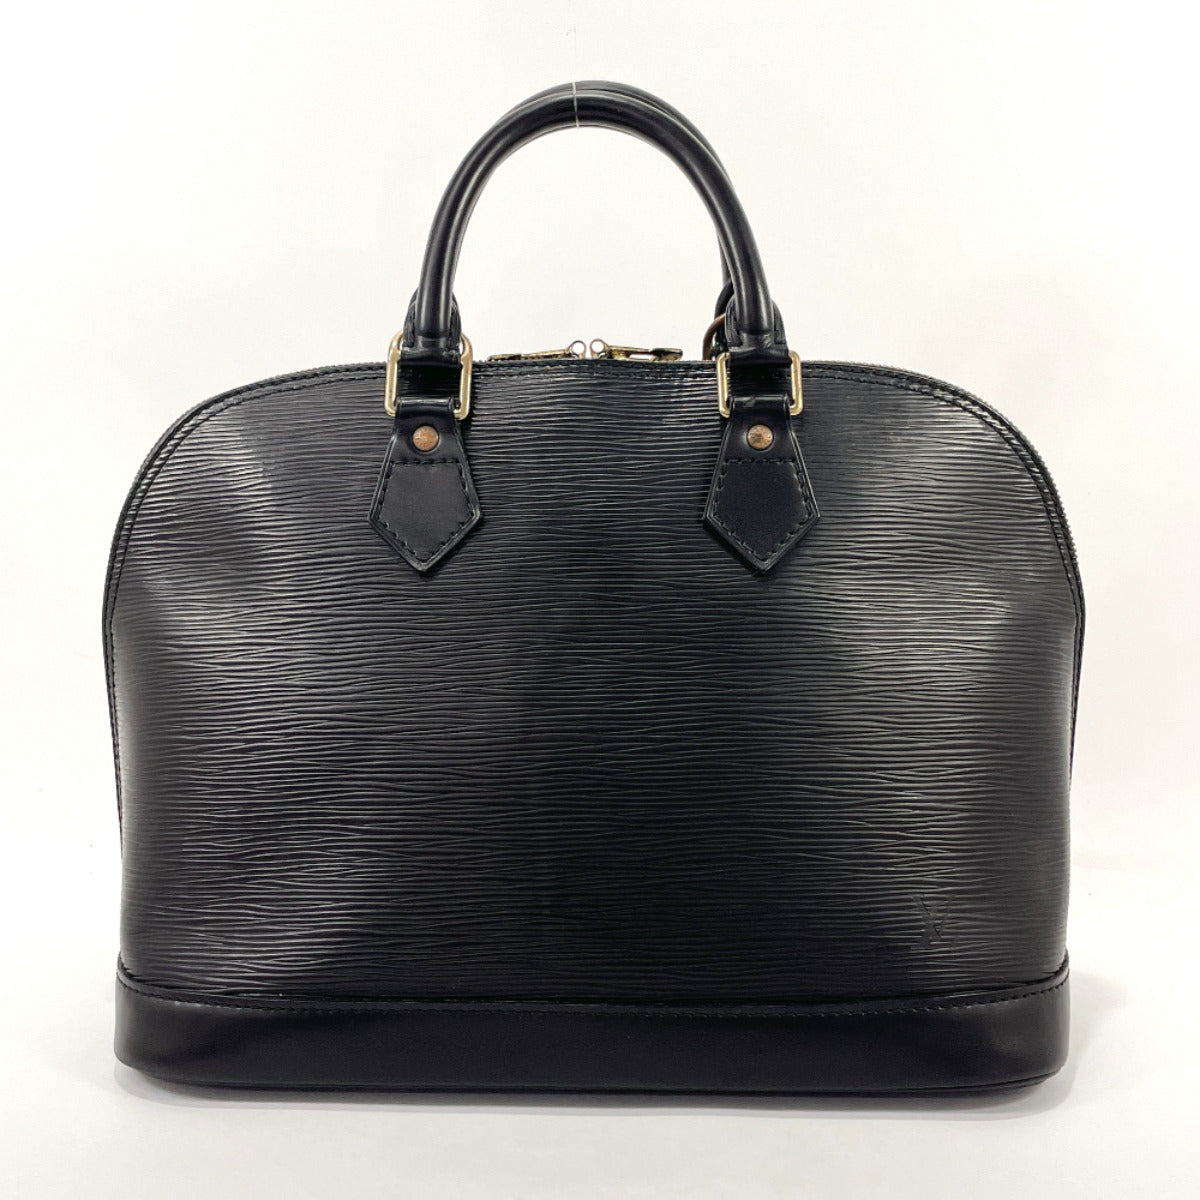 LOUIS VUITTON Handbag M40302 Alma PM Epi Leather Black Black Women